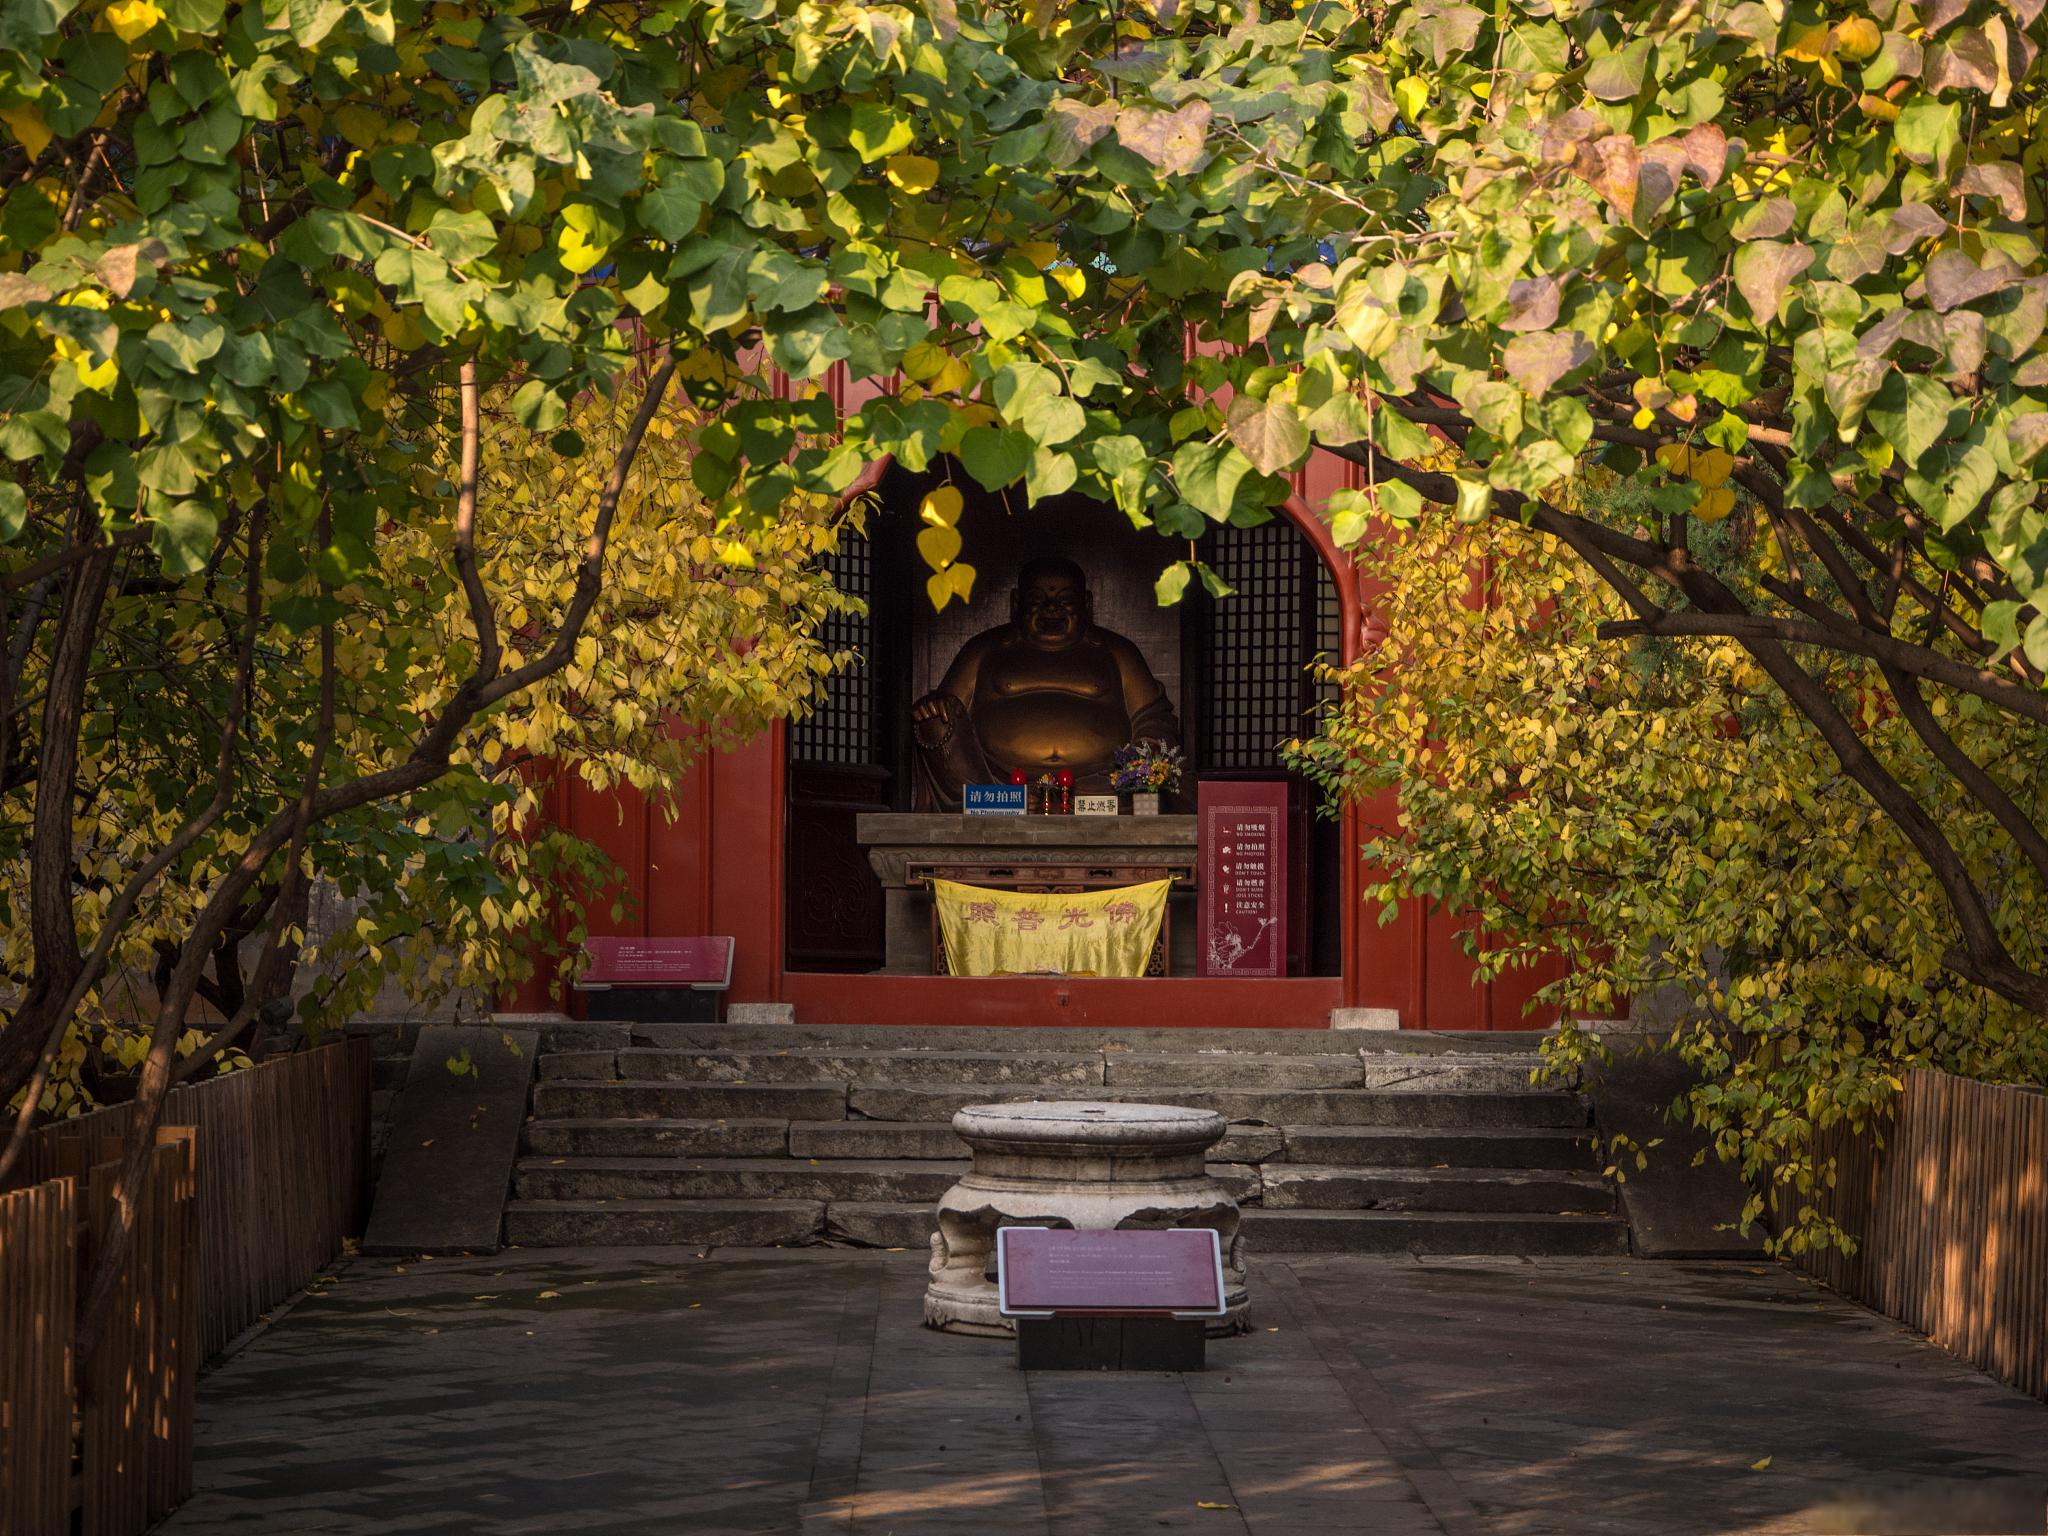 大觉寺的历史和文化内涵 大觉寺又称西山大觉寺,大觉禅寺,位于海淀区